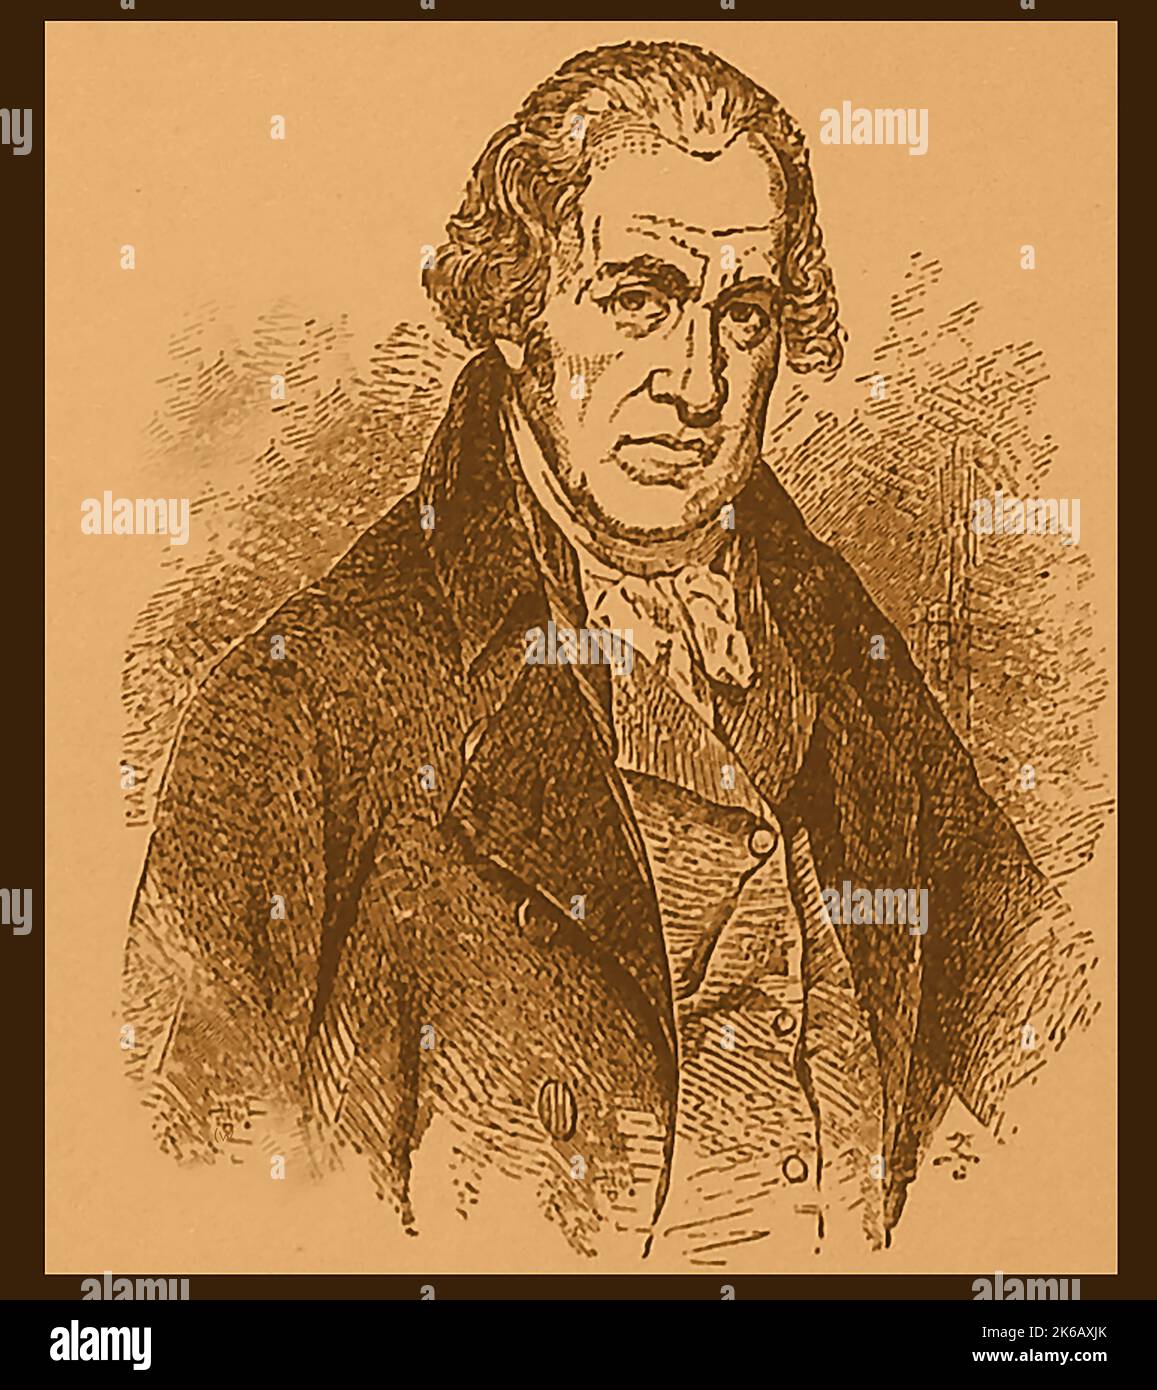 Un retrato Victoriano grabado de James Watt (1736-1819) inventor, ingeniero, y químico escocés . Mejoró la máquina de vapor de Thomas Newcomen con su propia máquina de vapor Watt en 1776, y fue un pionero de la Revolución Industrial. Foto de stock